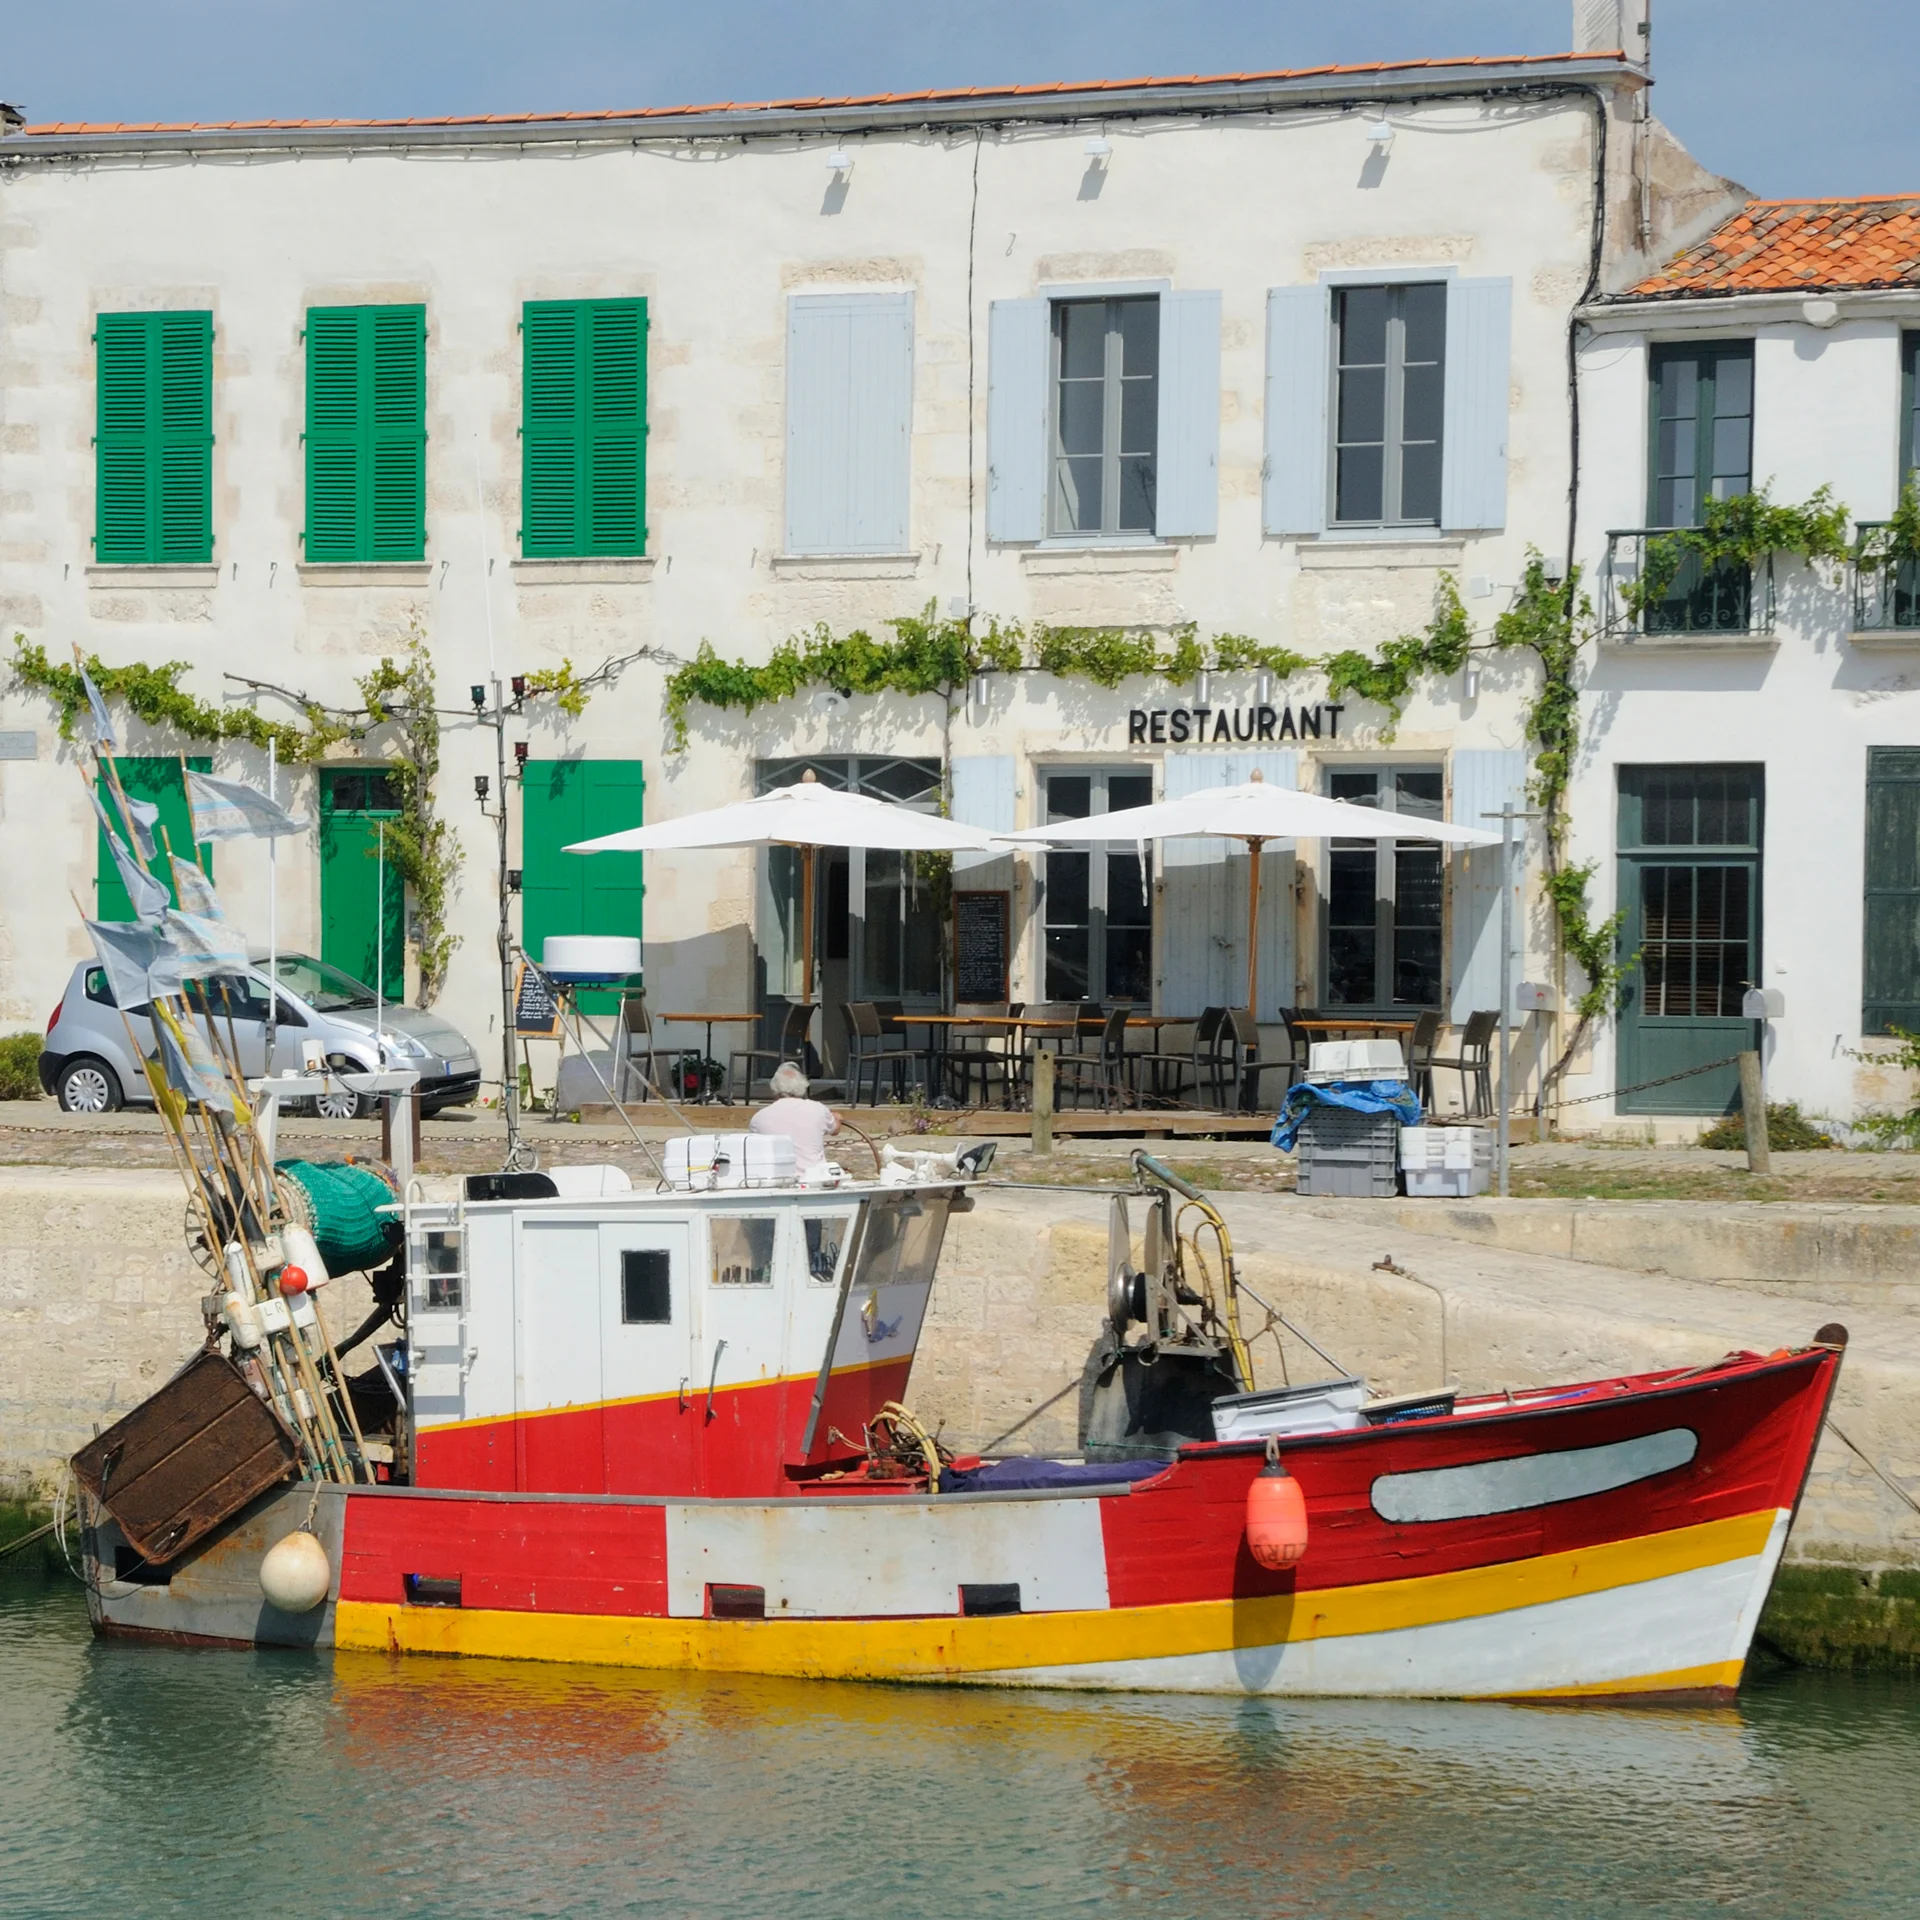 Restaurant-Segelboot am Hafen von La Rochelle 